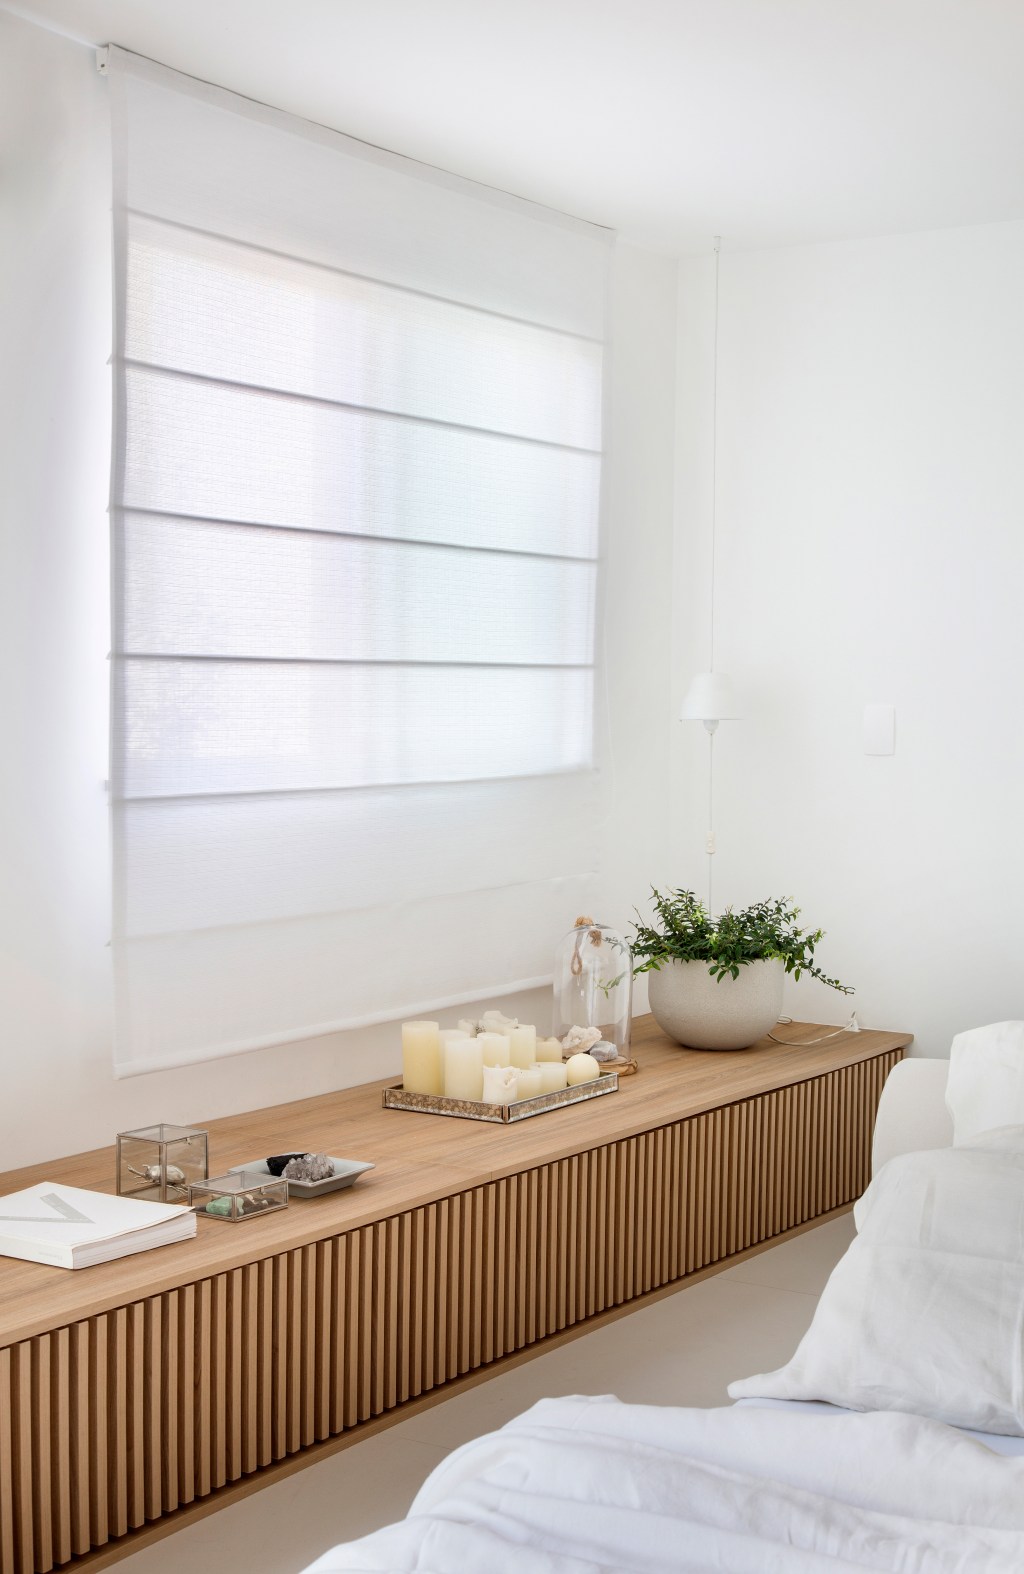 Loft de 40 m² ganha projeto minimalista que une branco e madeira. Projeto de Diego Raposo e Manuela Simas. Na foto, banco de marcenaria ripada no quarto.